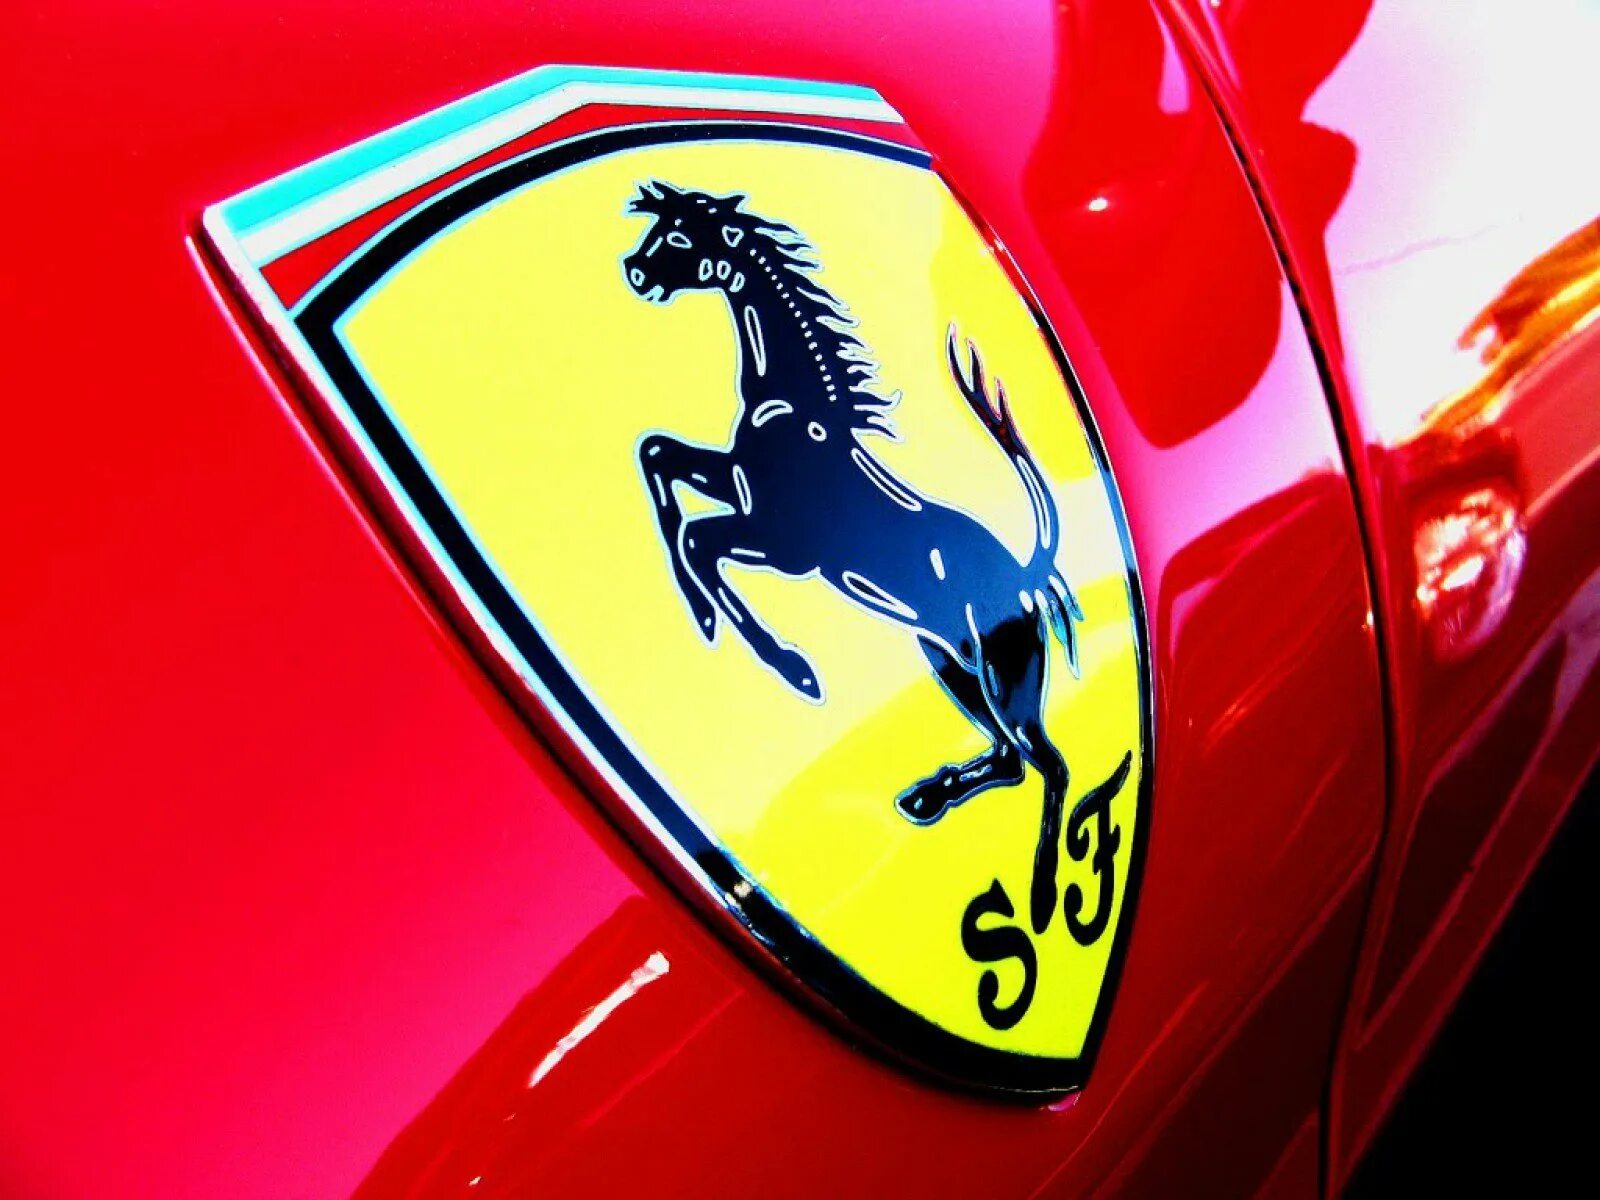 Бренд на коне. Скудерия Феррари (итал. Scuderia Ferrari) —. Логотип коня на машине. Марка машины с лошадью. Бренд машины с лошадью.